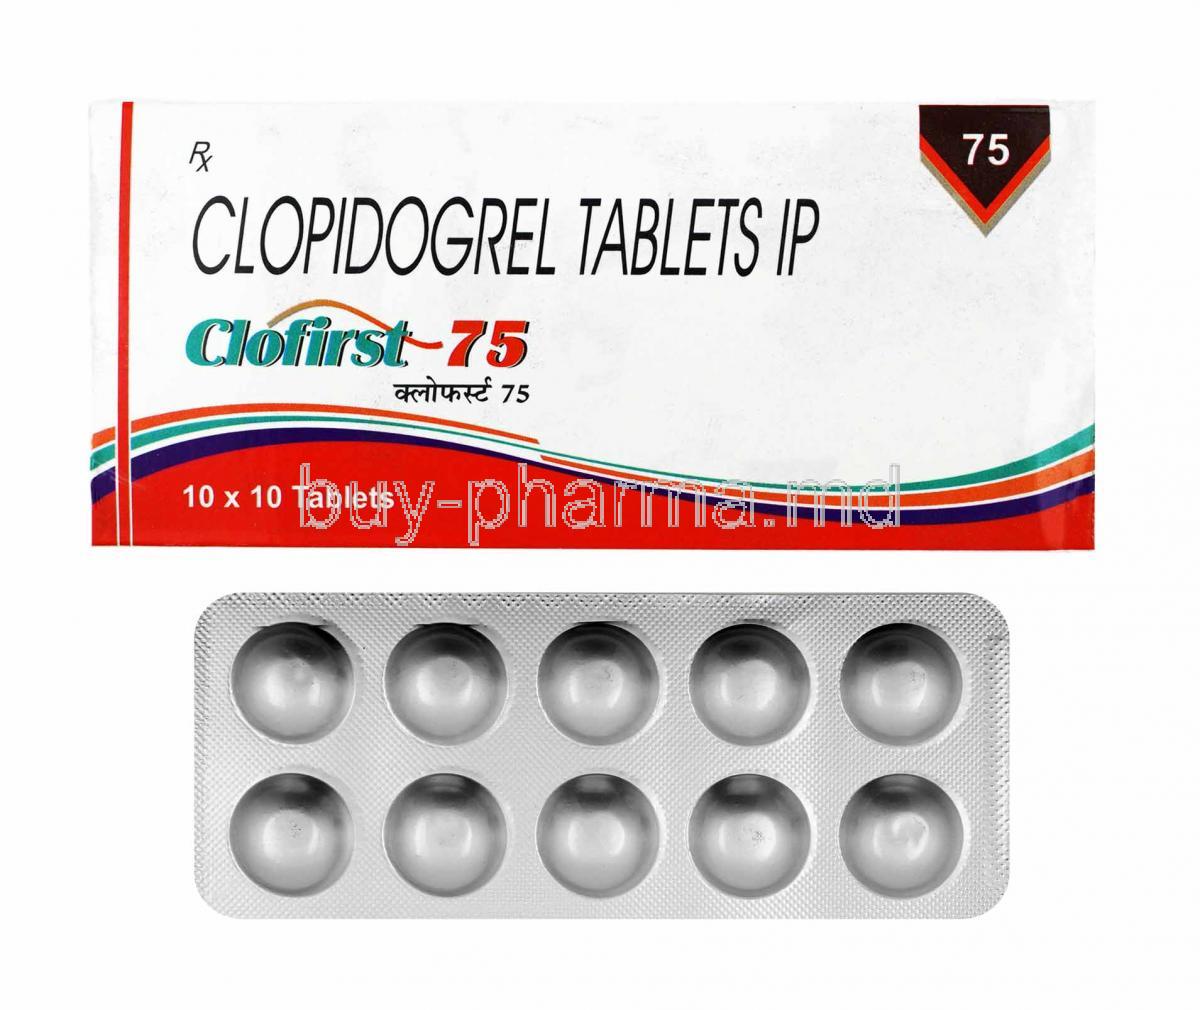 Clofirst, Clopidogrel 75mg box and tablets